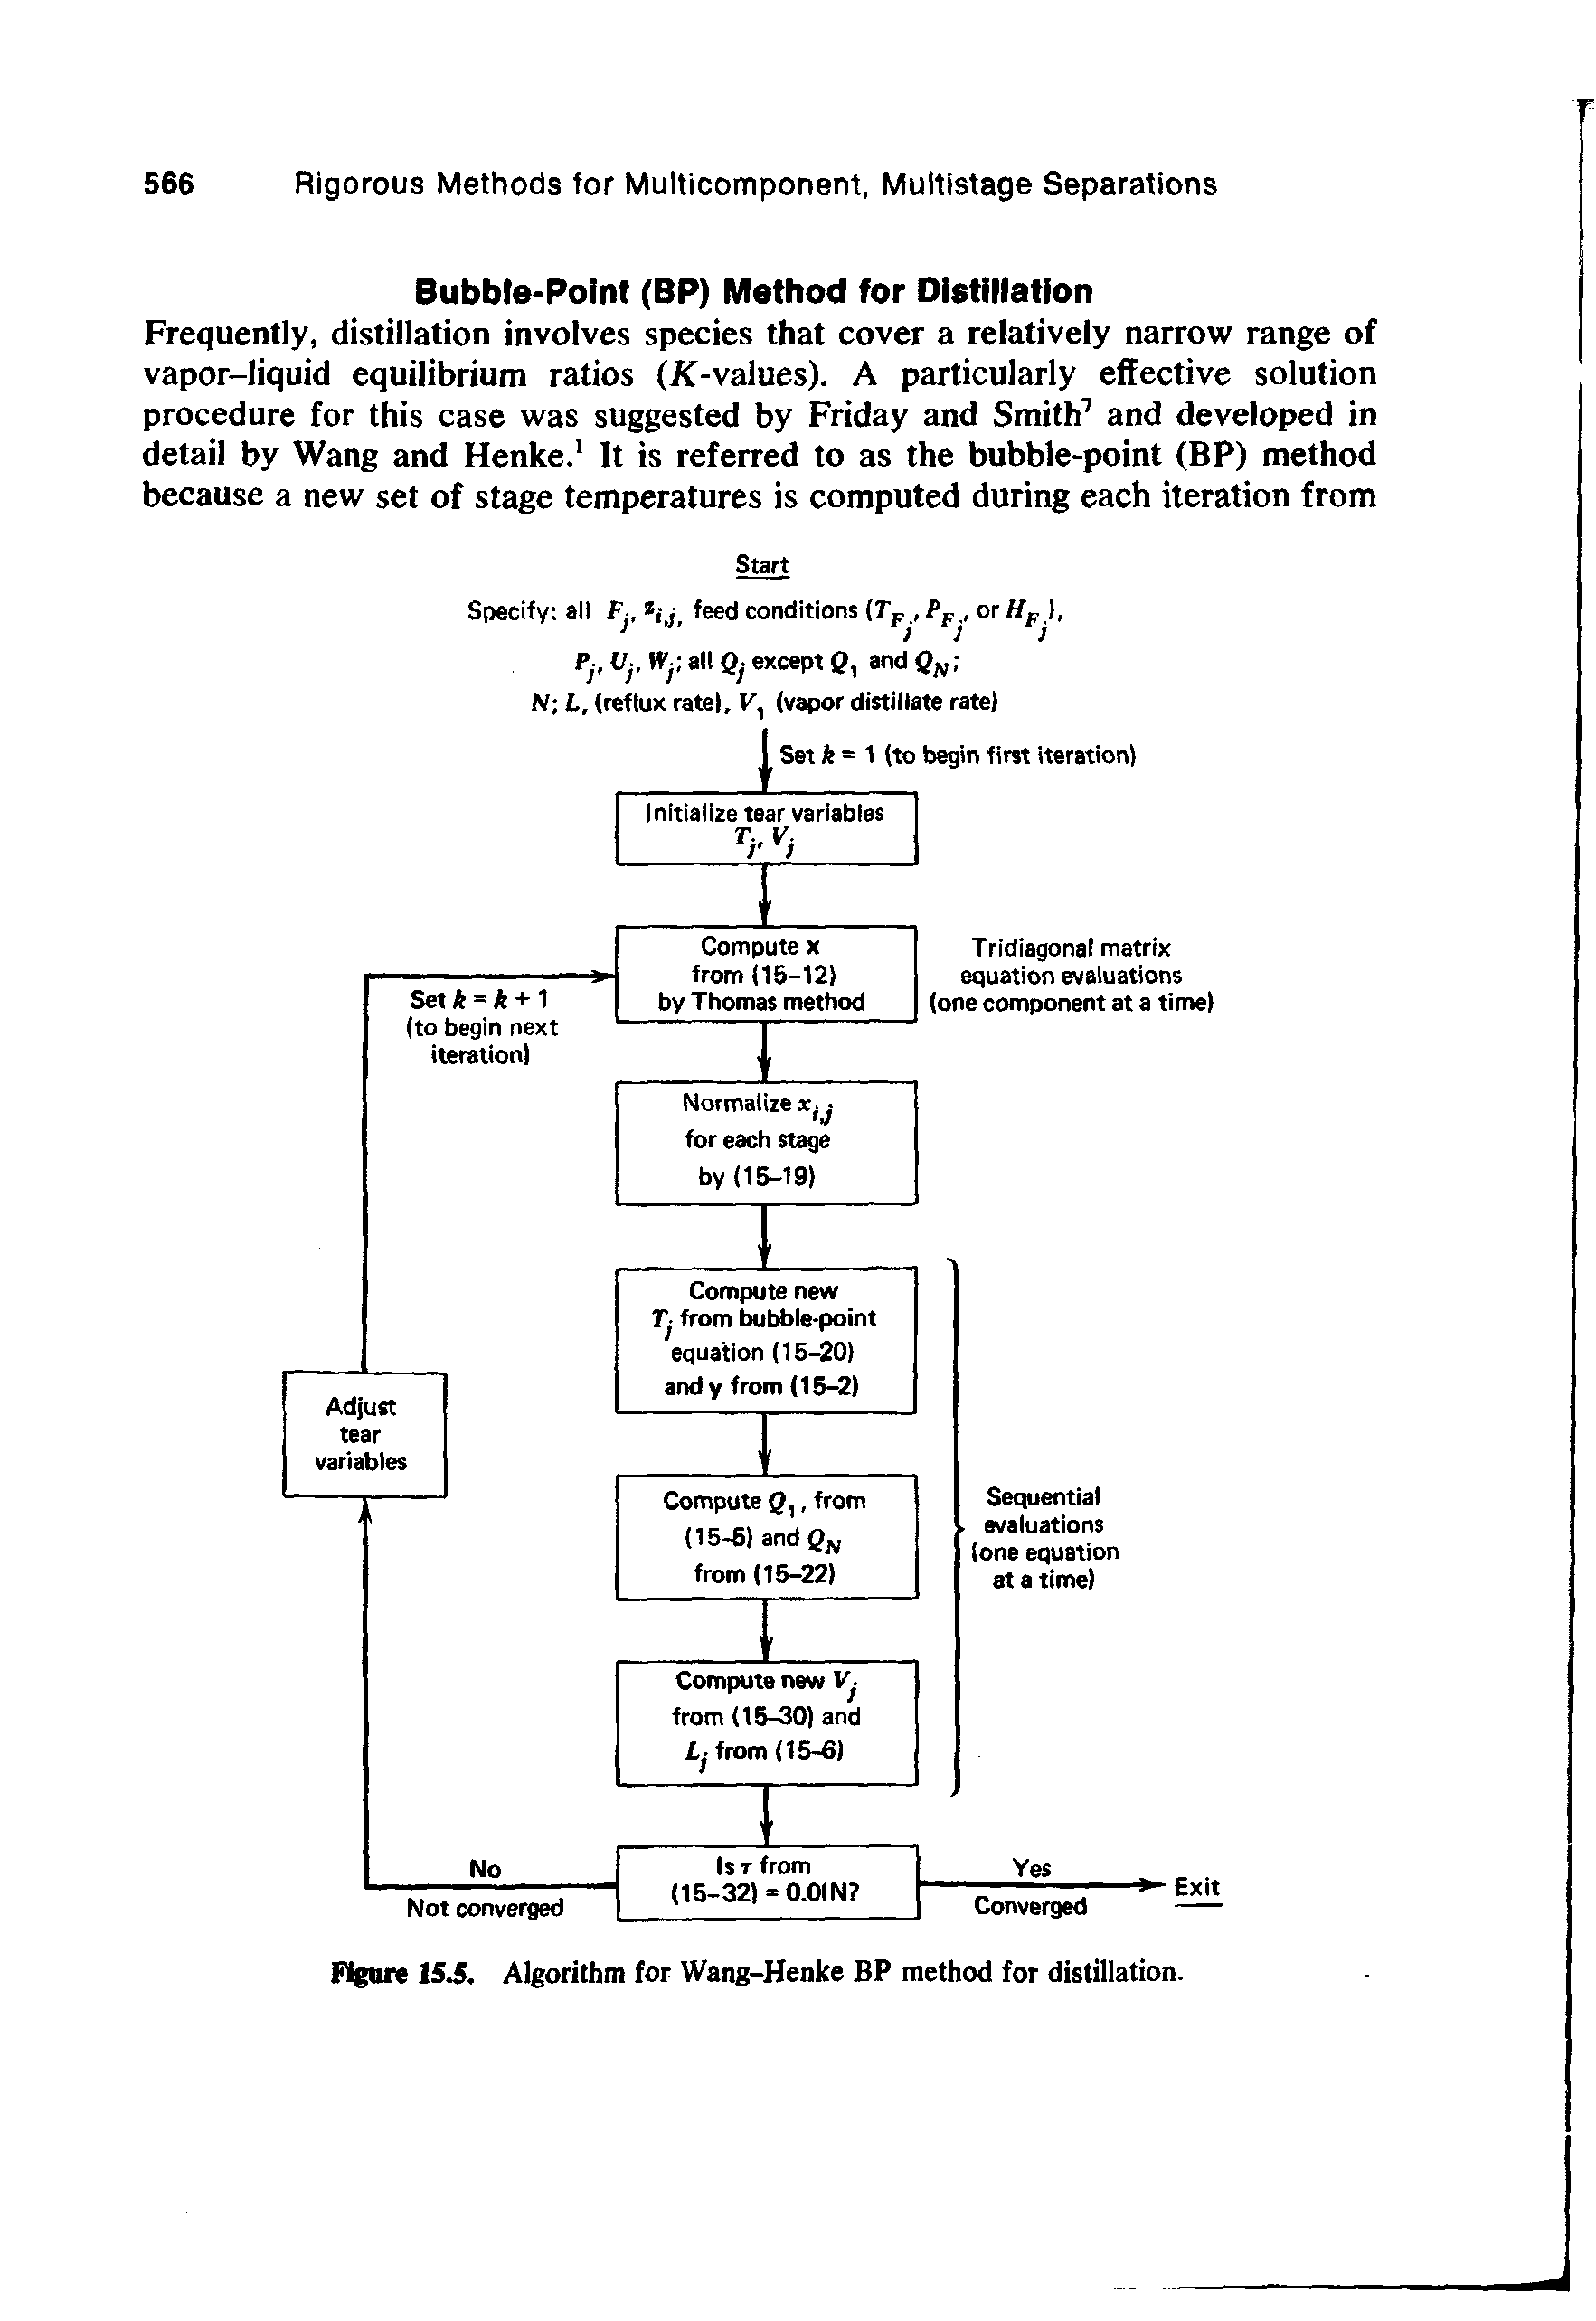 Figure 15J, Algorithm for Wang-Henke BP method for distillation.